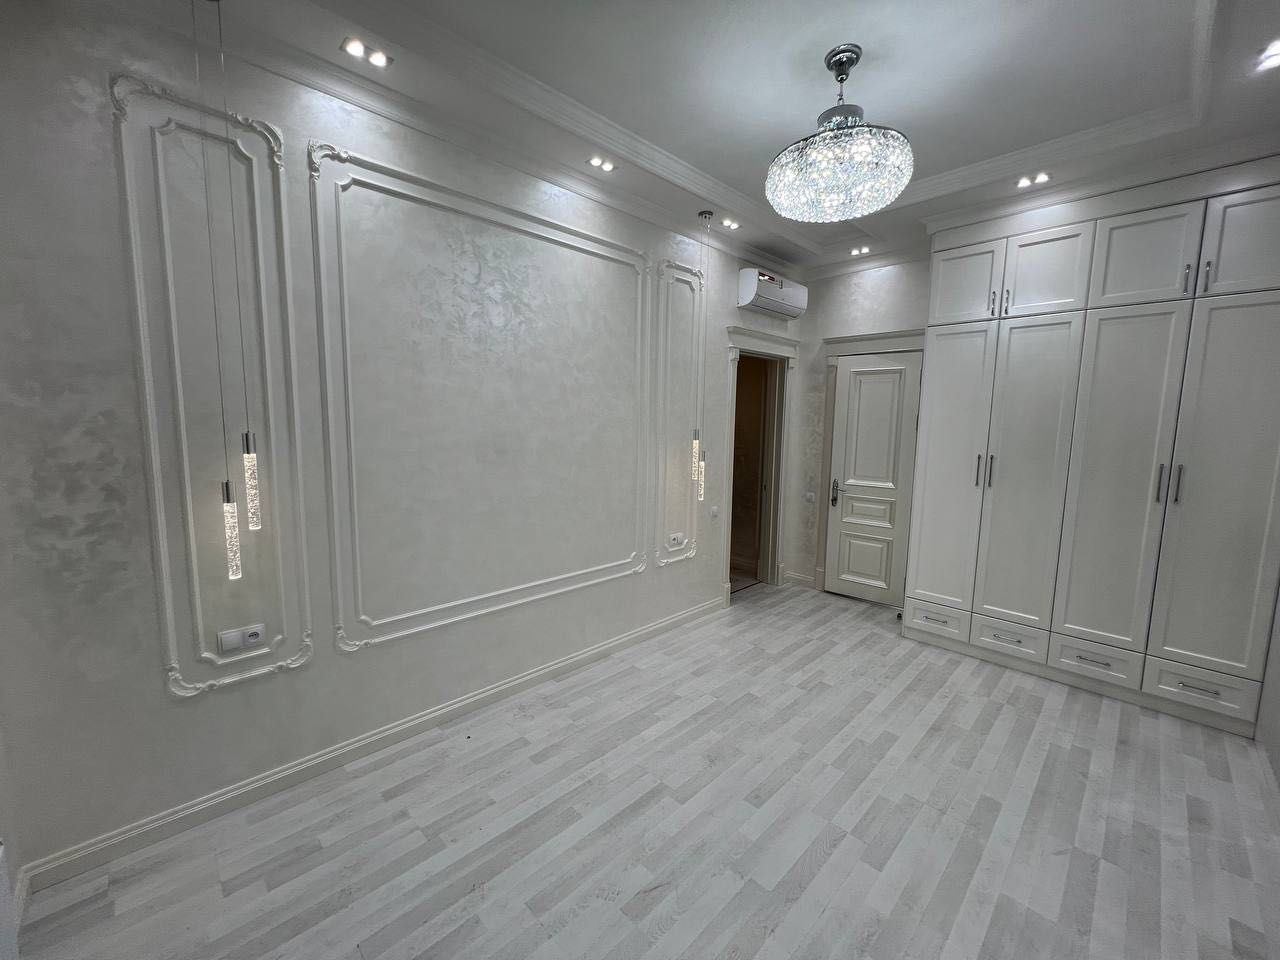 Срочно продается квартира в Ташкент сити по очень привлекательной цене